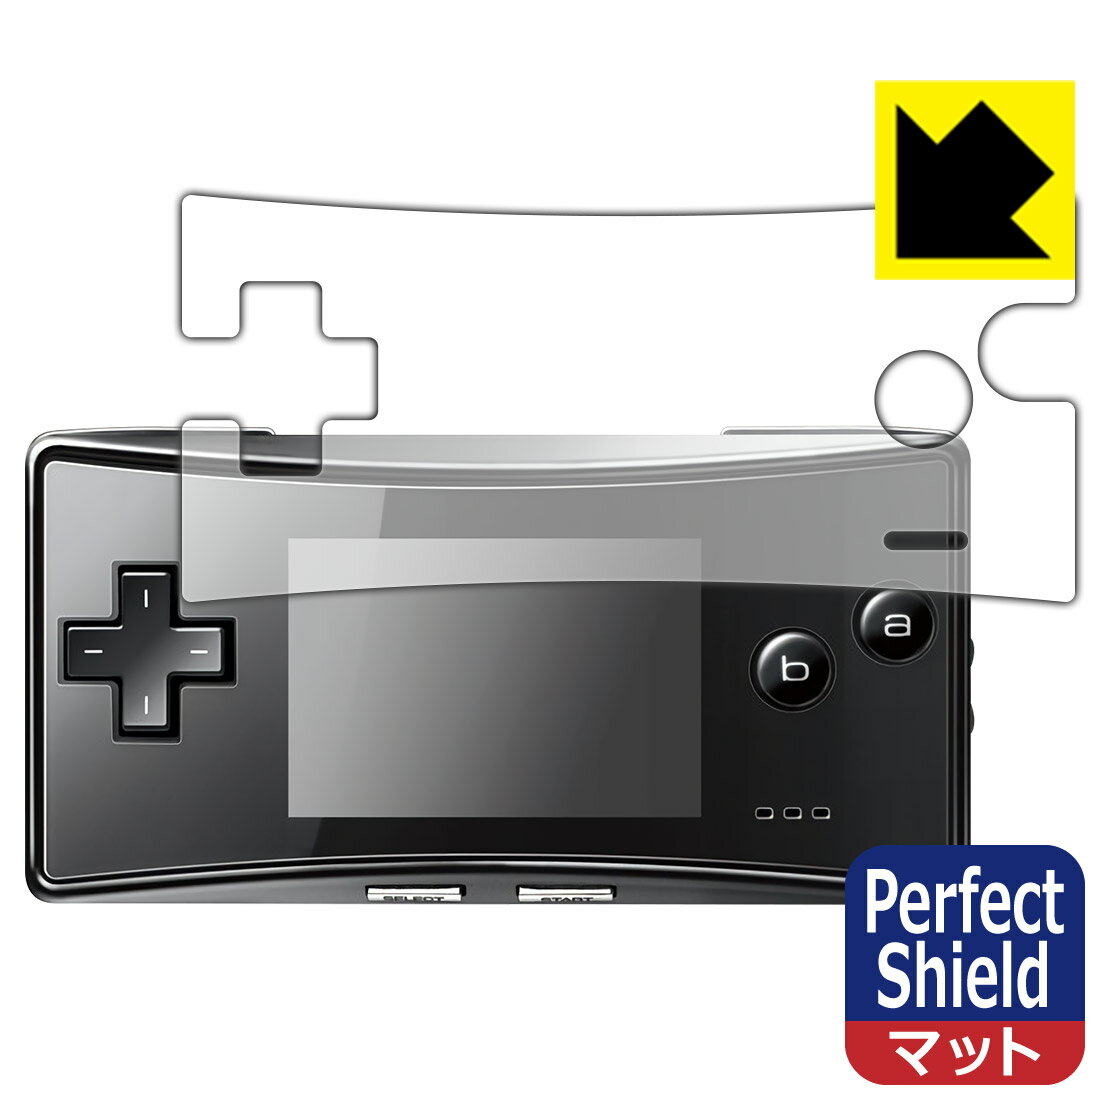 Perfect Shield ゲームボーイミクロ 用 液晶保護フィルム (3枚セット) 日本製 自社製造直販